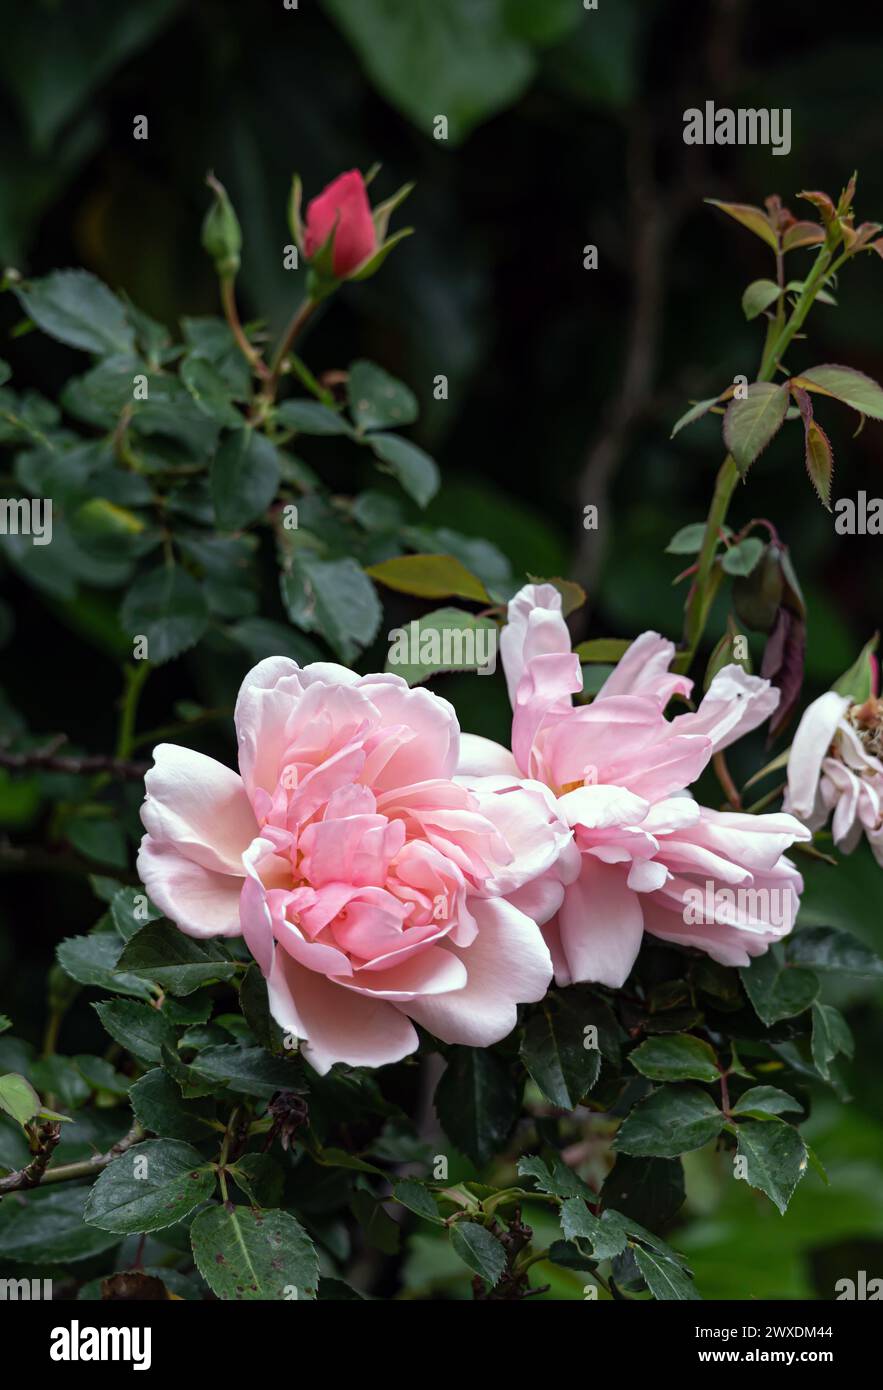 Rosa Felicia Albertine. Due gemme in fiore Roses Morgengruss circondate da verde vegetale di un cespuglio, nel giardino. Fiori di colore rosa salmone, primo piano sullo sfondo botanico Foto Stock